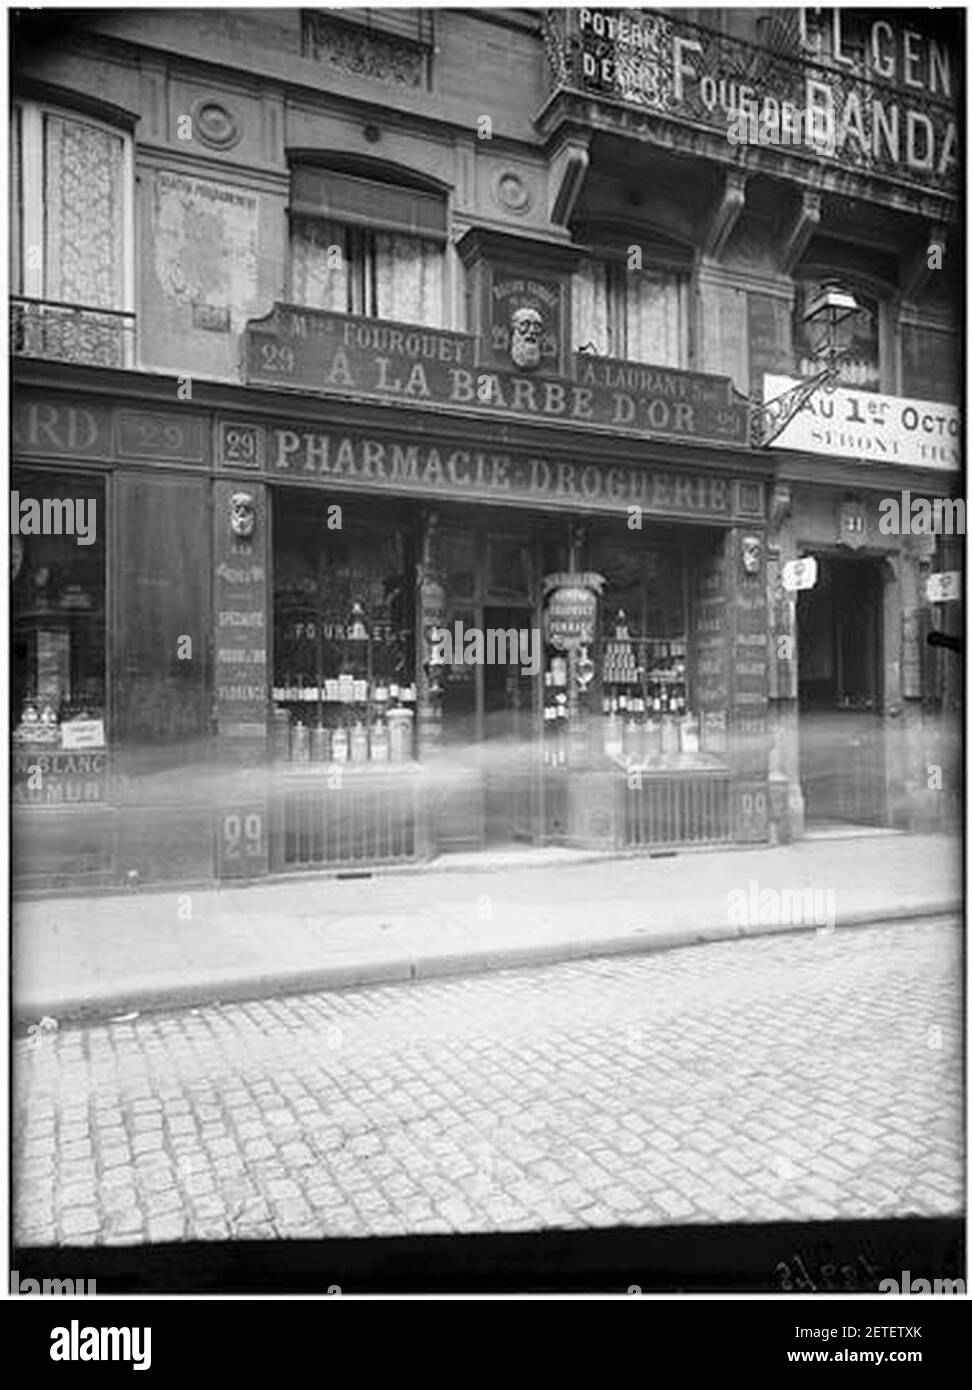 Pharmacie droguerie ''A la barbe d'Or'' - façade sur rue - Paris 01 -  Médiathèque de l'architecture et du patrimoine Photo Stock - Alamy